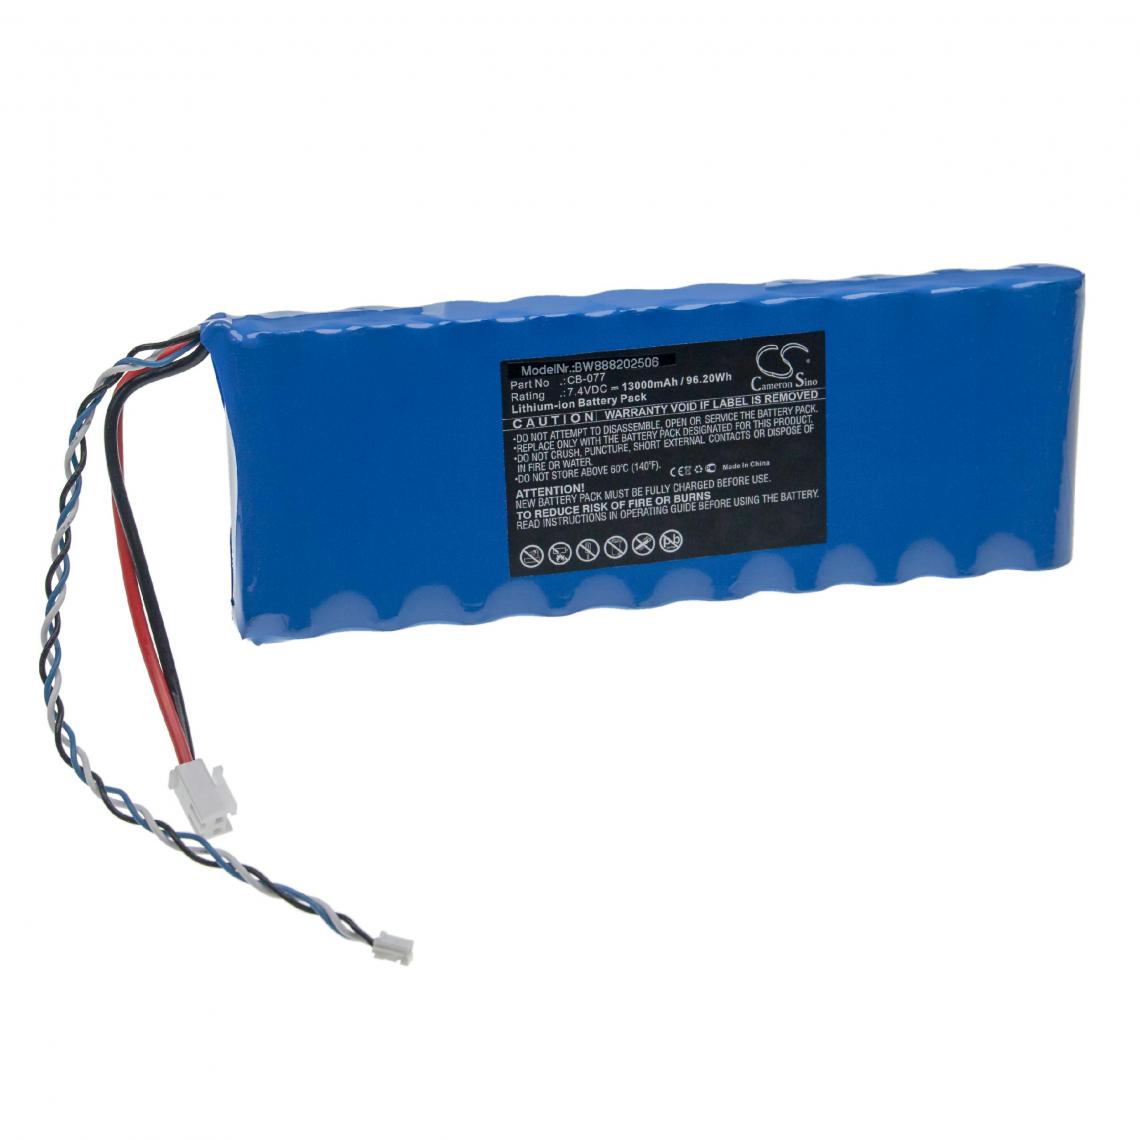 Vhbw - vhbw Batterie remplacement pour Promax CB-077 pour outil de mesure (13000mAh, 7,4V, Li-ion) - Piles rechargeables